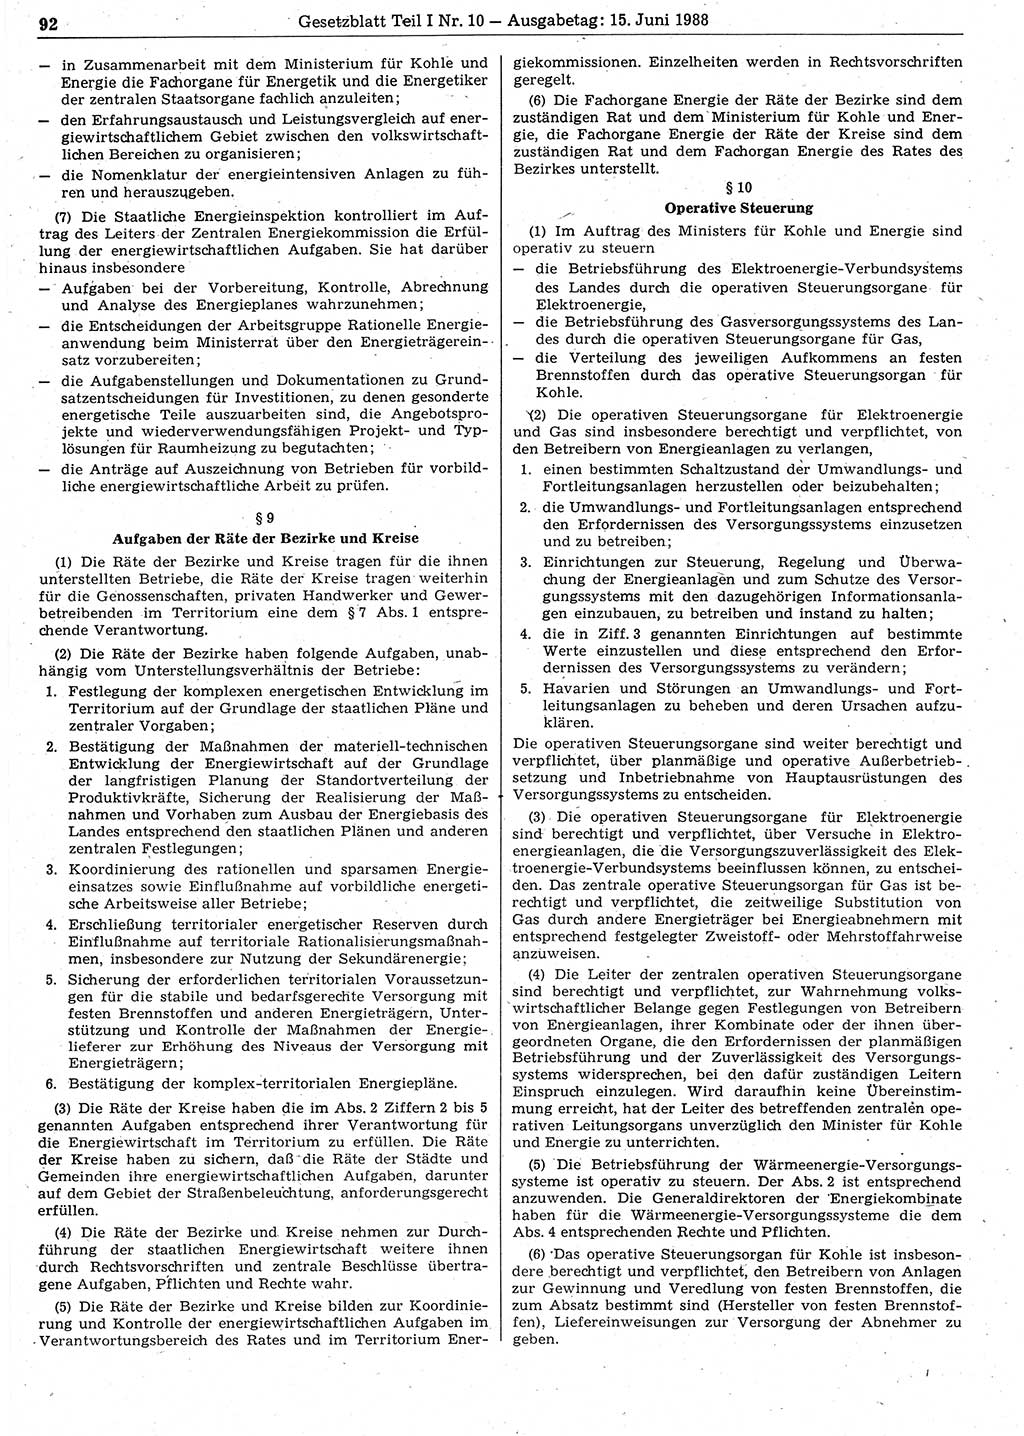 Gesetzblatt (GBl.) der Deutschen Demokratischen Republik (DDR) Teil Ⅰ 1988, Seite 92 (GBl. DDR Ⅰ 1988, S. 92)